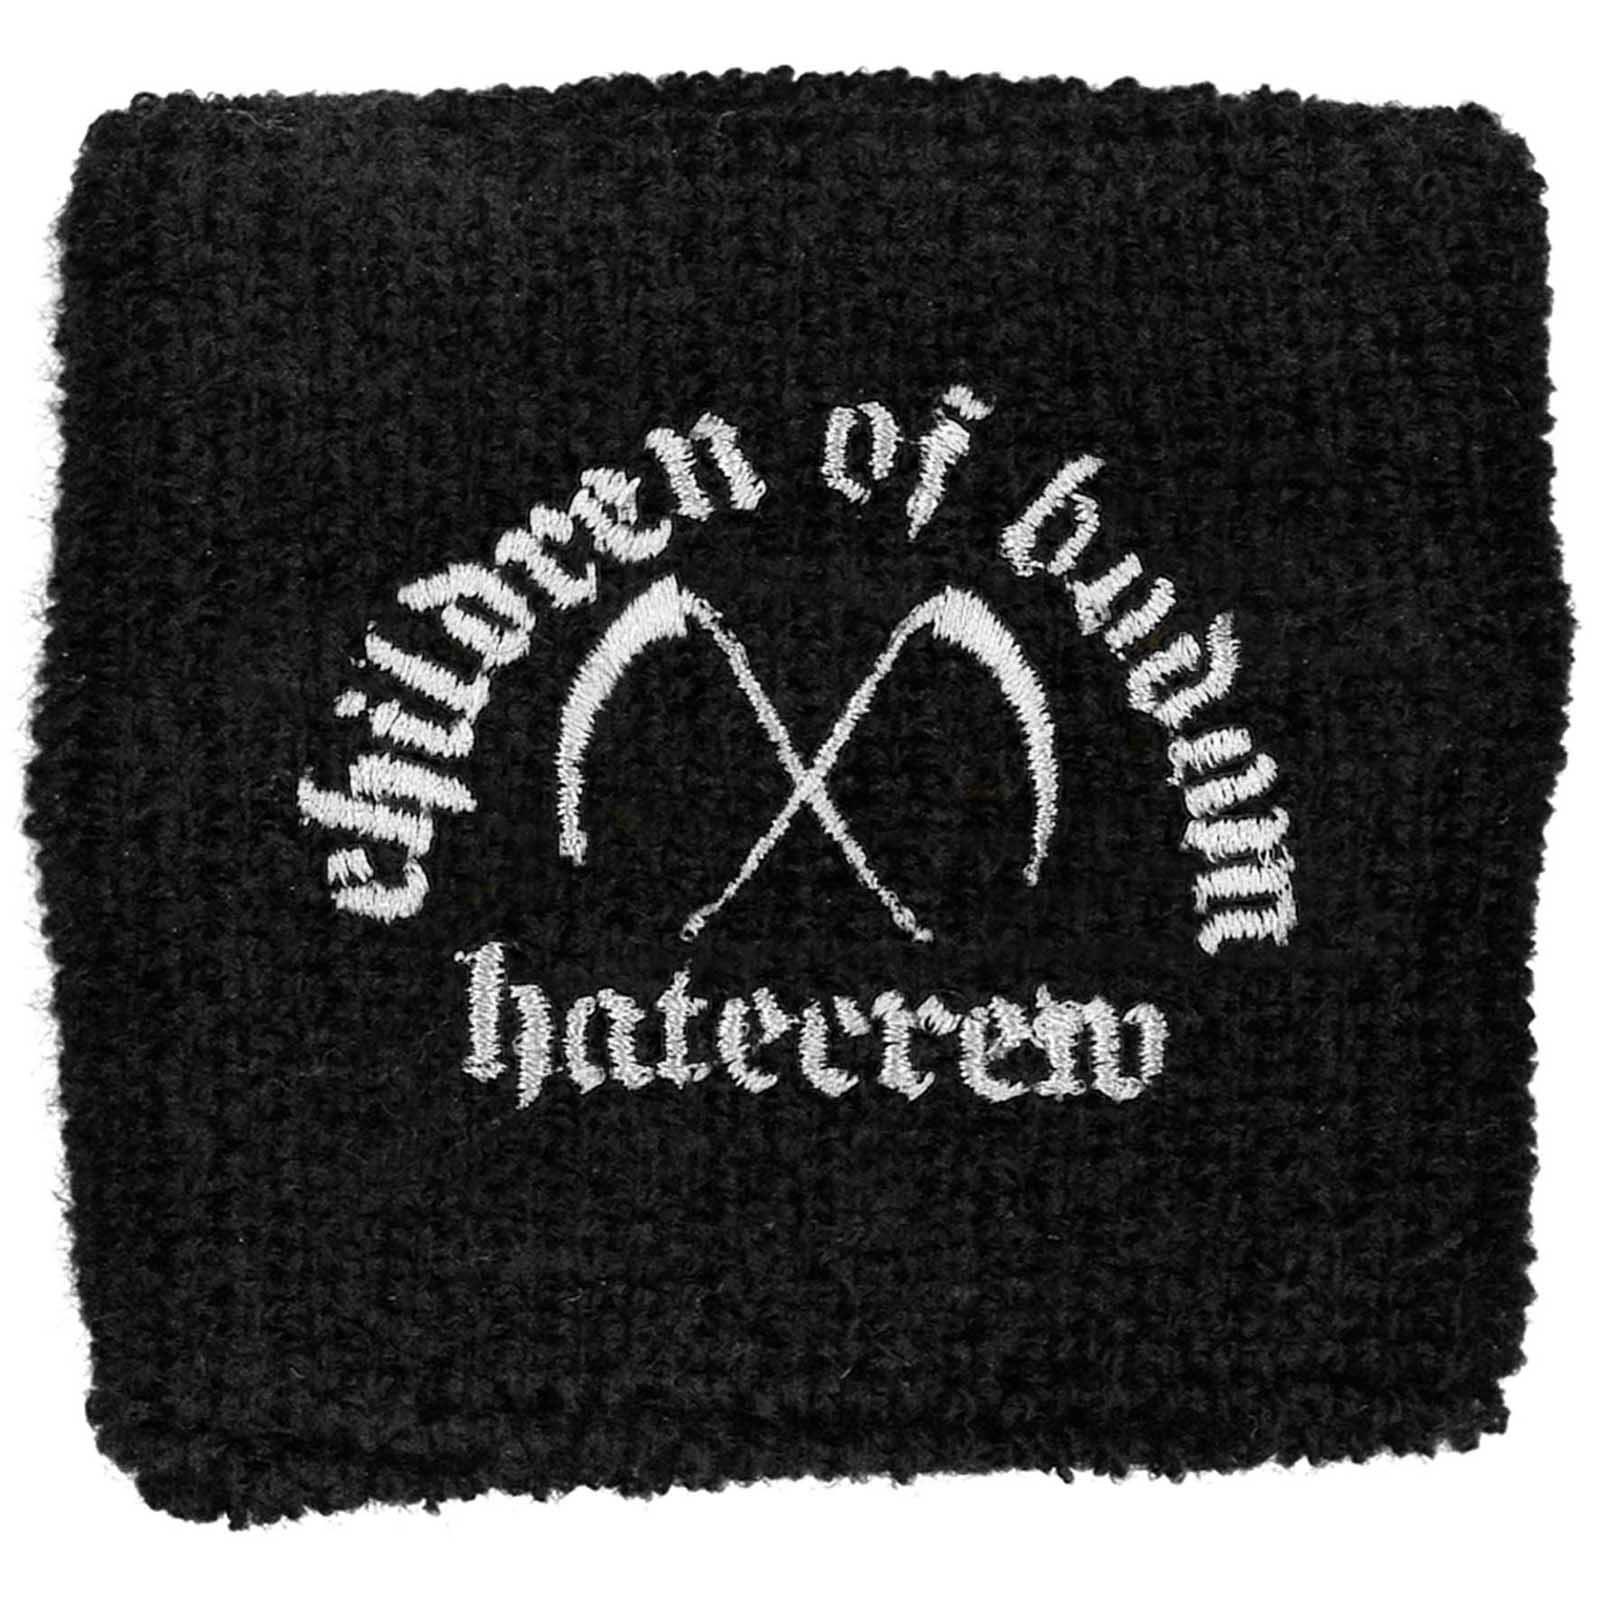 (チルドレン・オブ・ボドム) Children Of Bodom オフィシャル商品 Hate Crew Deathroll リストバンド ..